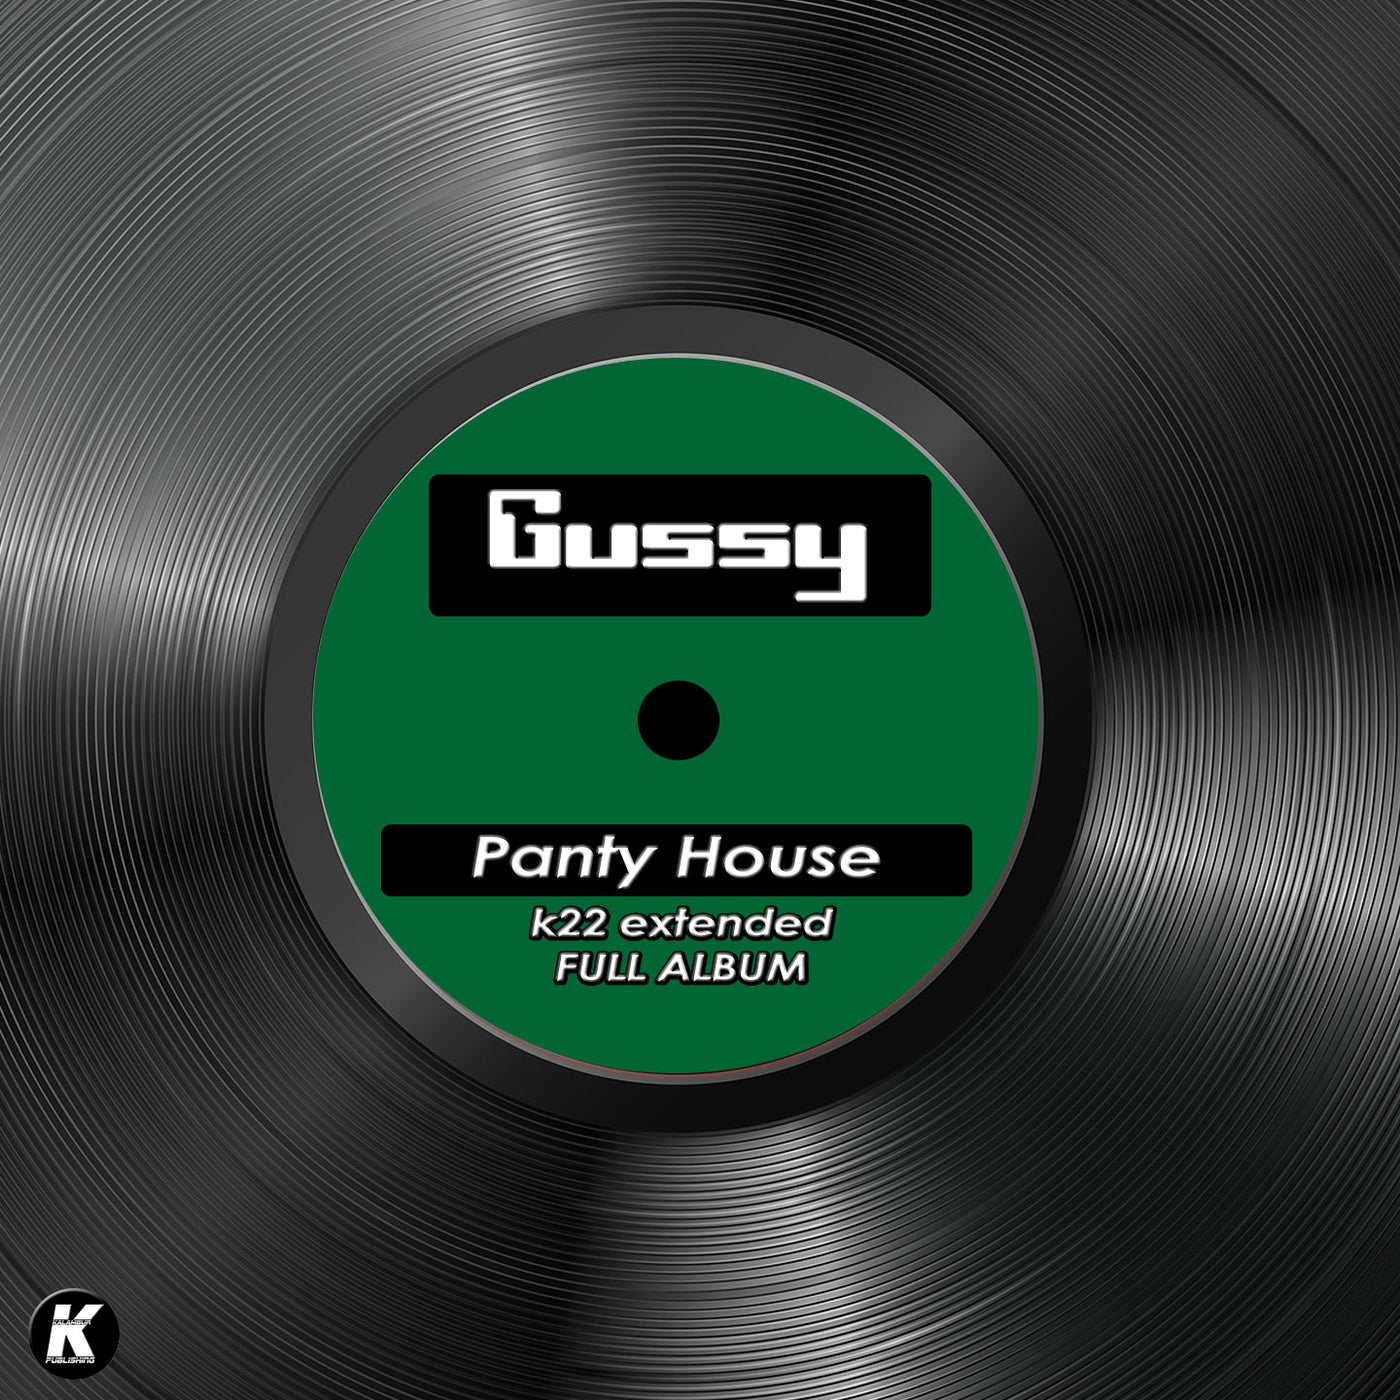 PANTY HOUSE k22 extended full album